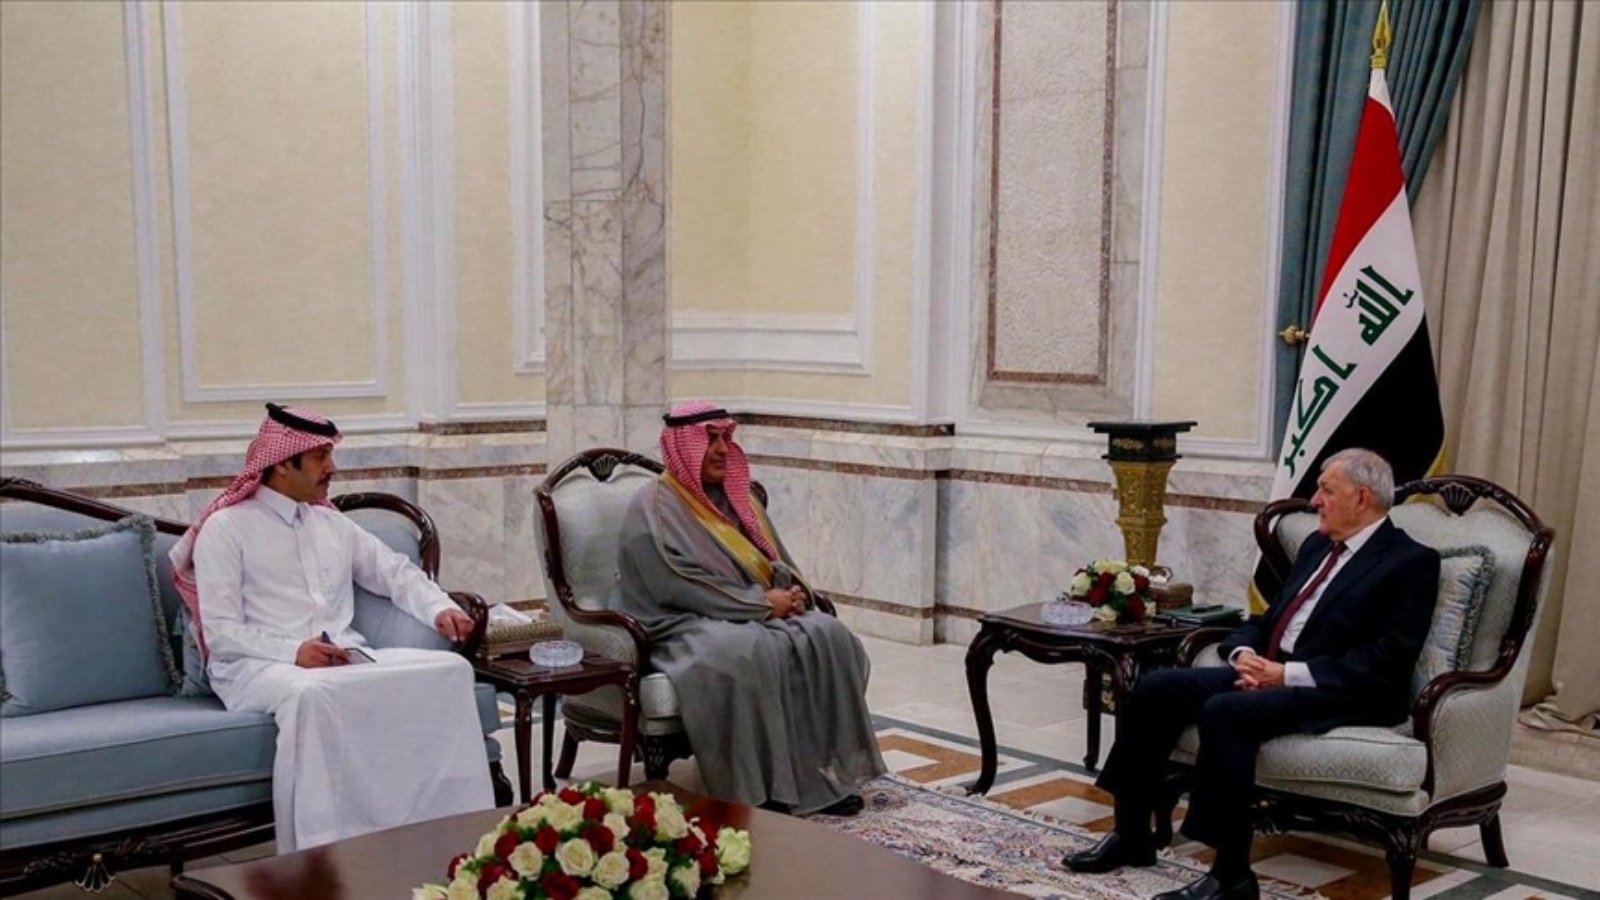 السفير السعودي في العراق عبد العزيز الشمري ملتقيا في وقت سابق مع الرئيس العراقي عبد اللطيف رشيد حيث بحثا تعزيز علاقات بلديهما (الرئاسة)